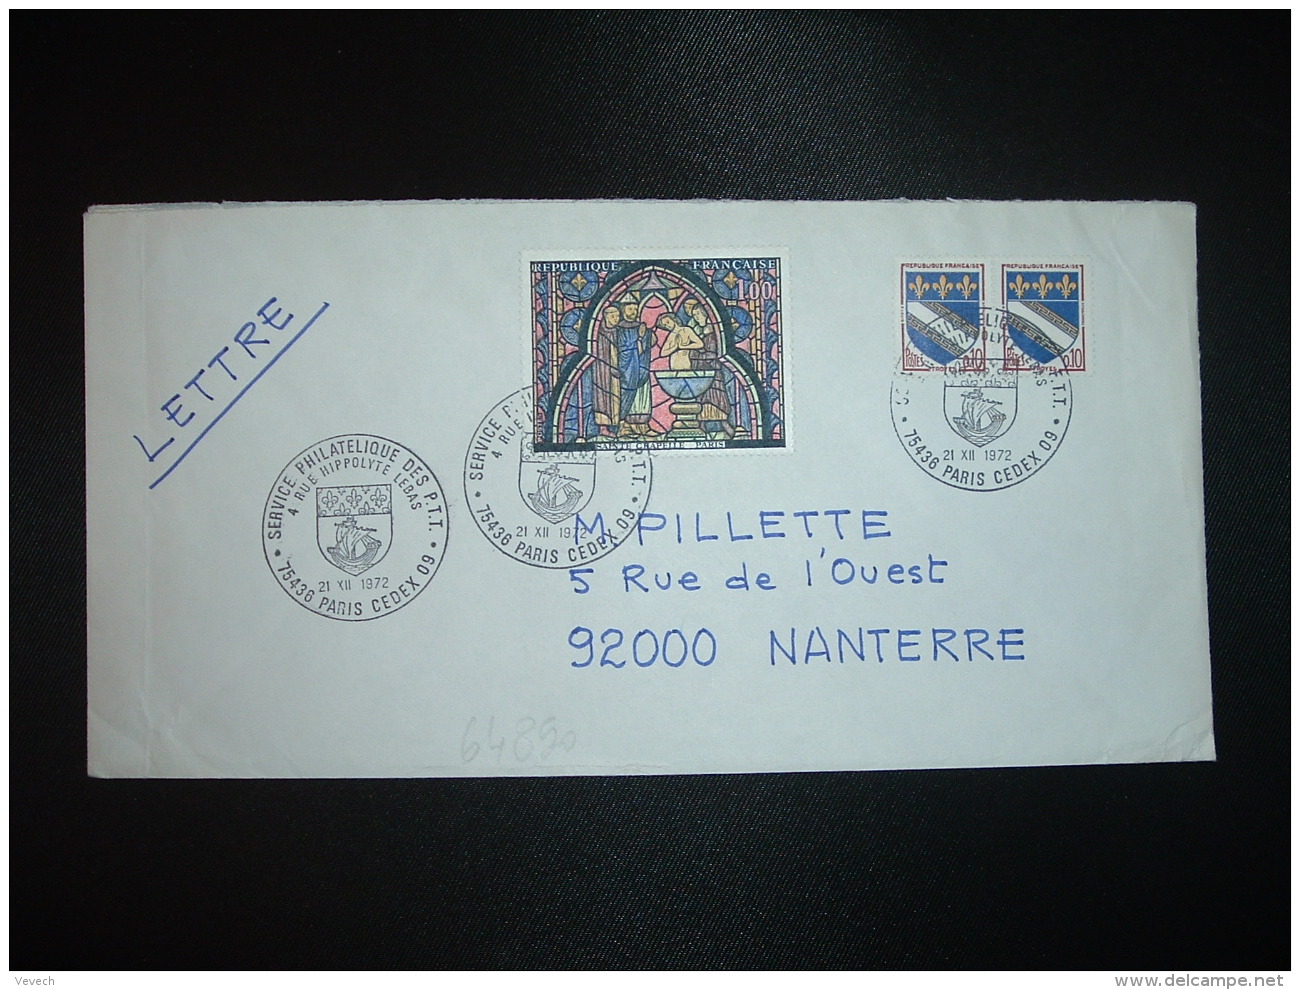 LETTRE TP SAINTE CHAPELLE PARIS 1,00 + TROYES 0,10 Paire OBL.21 XII 1972 PARIS CEDEX 09 SERVICE PHILATELIQUE DES PTT - Posttarife